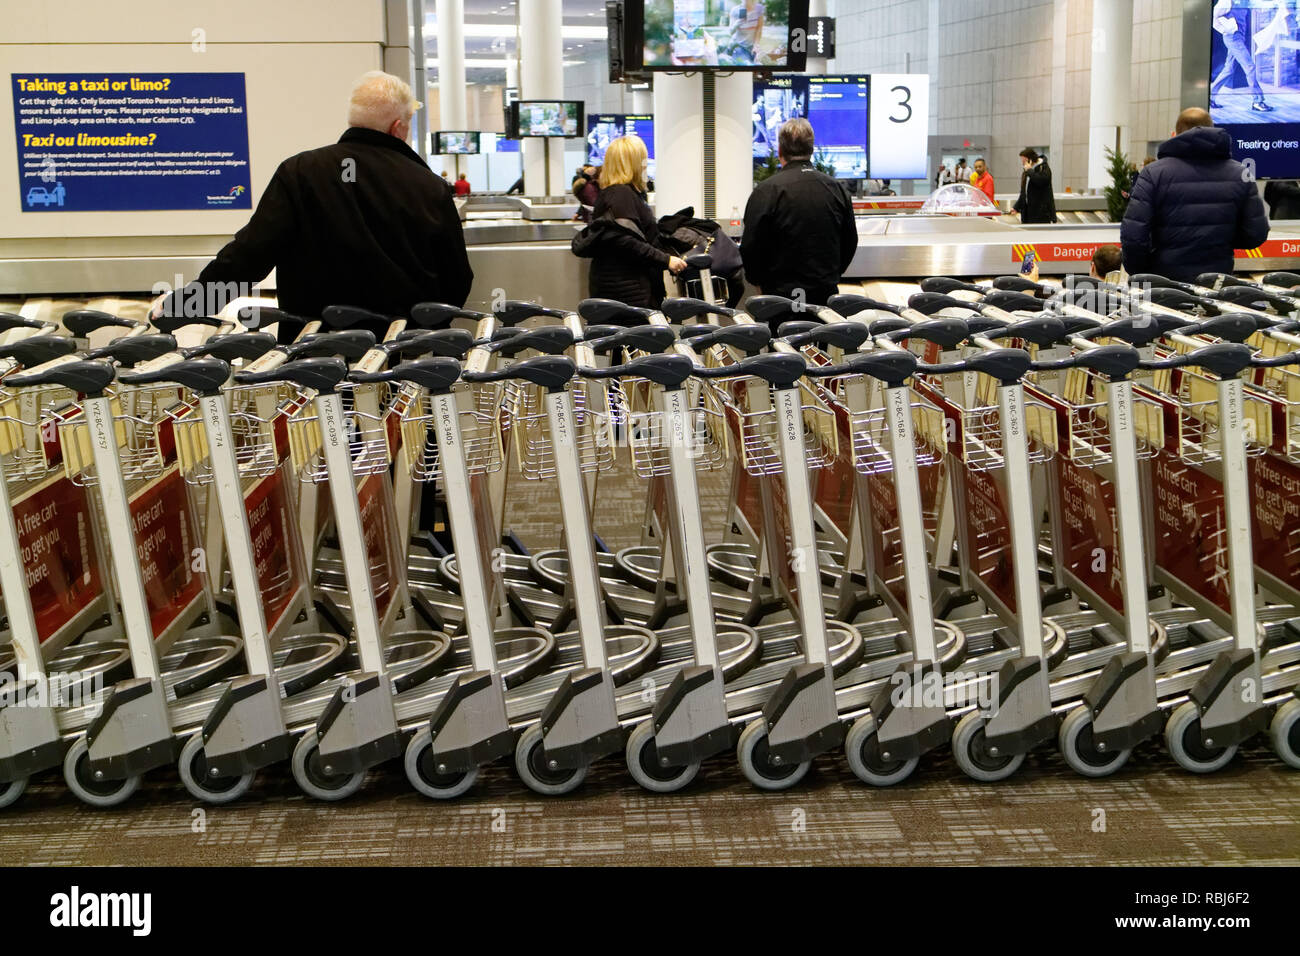 Personnes debout par des rangées de chariots à bagages à l'aéroport Pearson de Toronto en attente de leurs bagages pour arriver. Banque D'Images